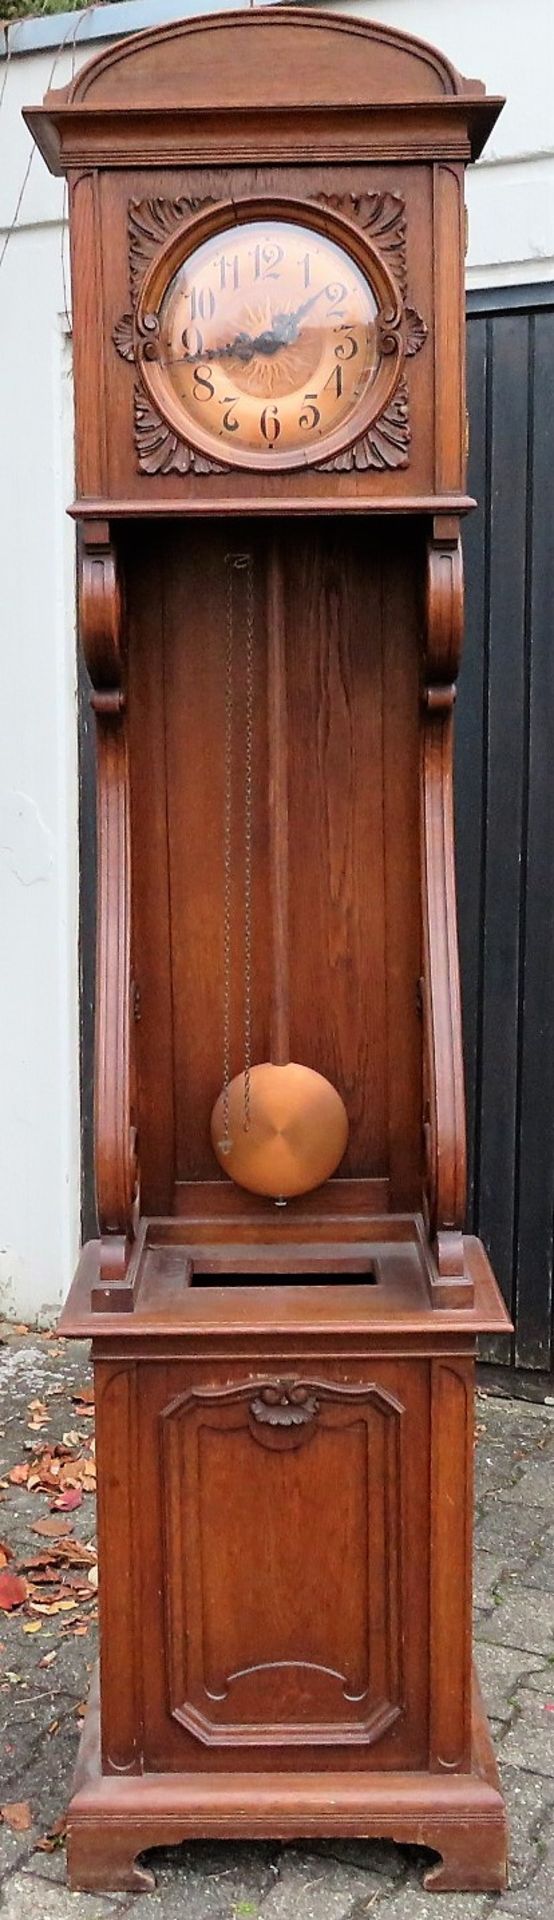 Standuhr, um 1900, Gehäuse Eiche geschnitzt, Schlag auf Tonfeder, 2-gewichtig, 225 x 54 x 36 cm.